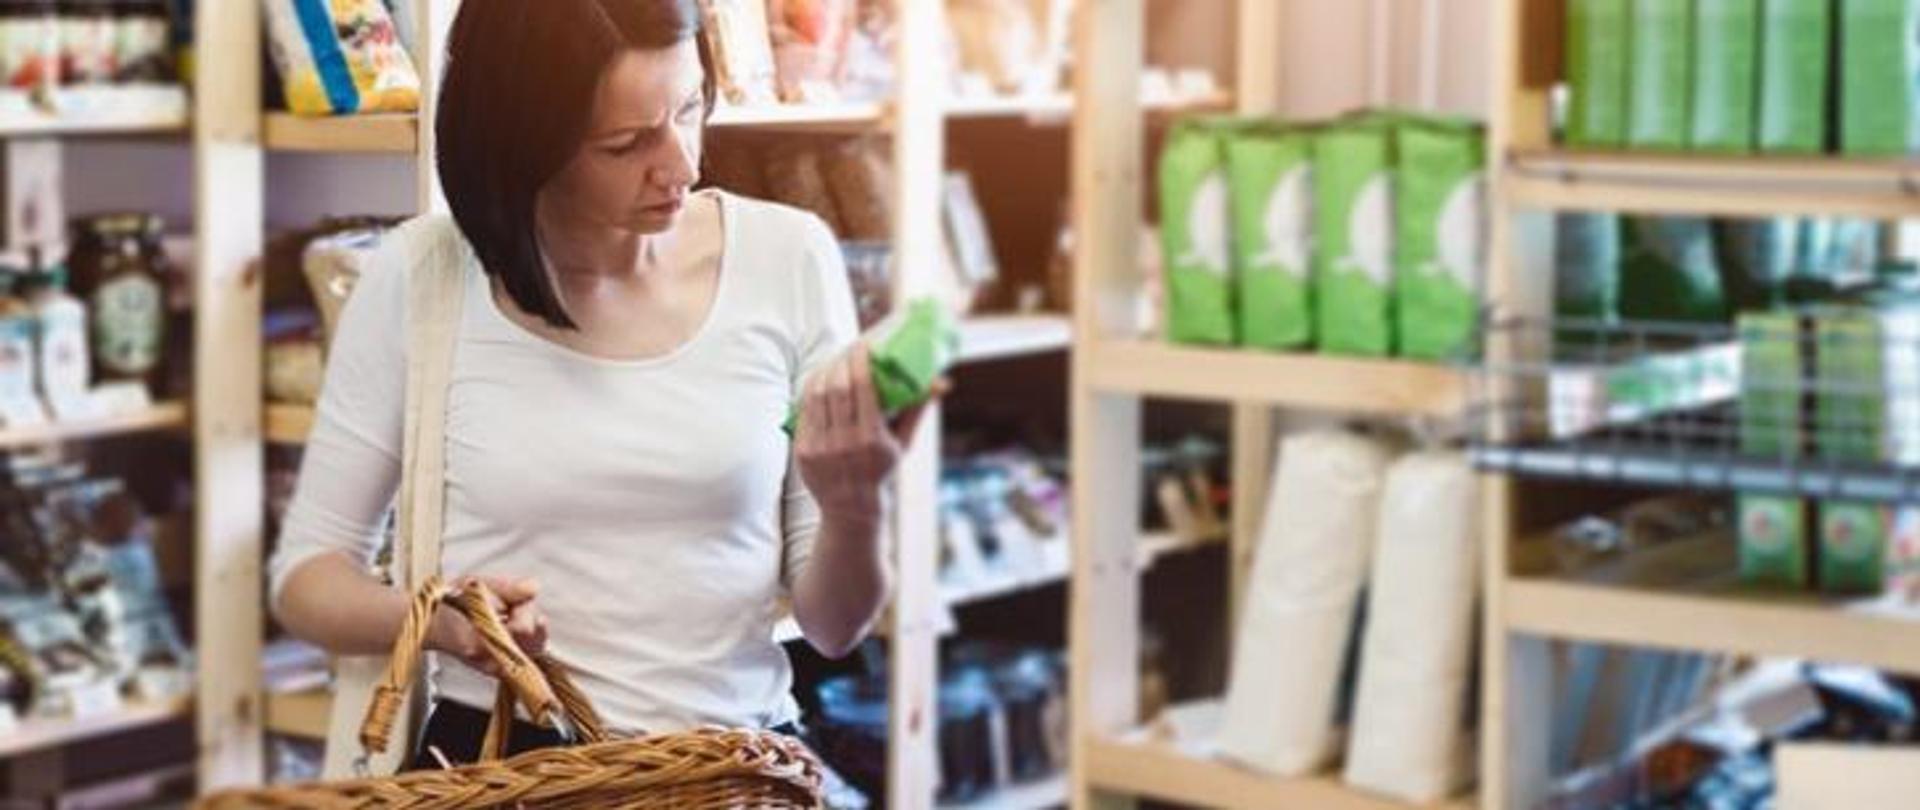 Kobieta, wśród pułek sklepowych, z koszykiem w ręku ogląda etykietę produktu